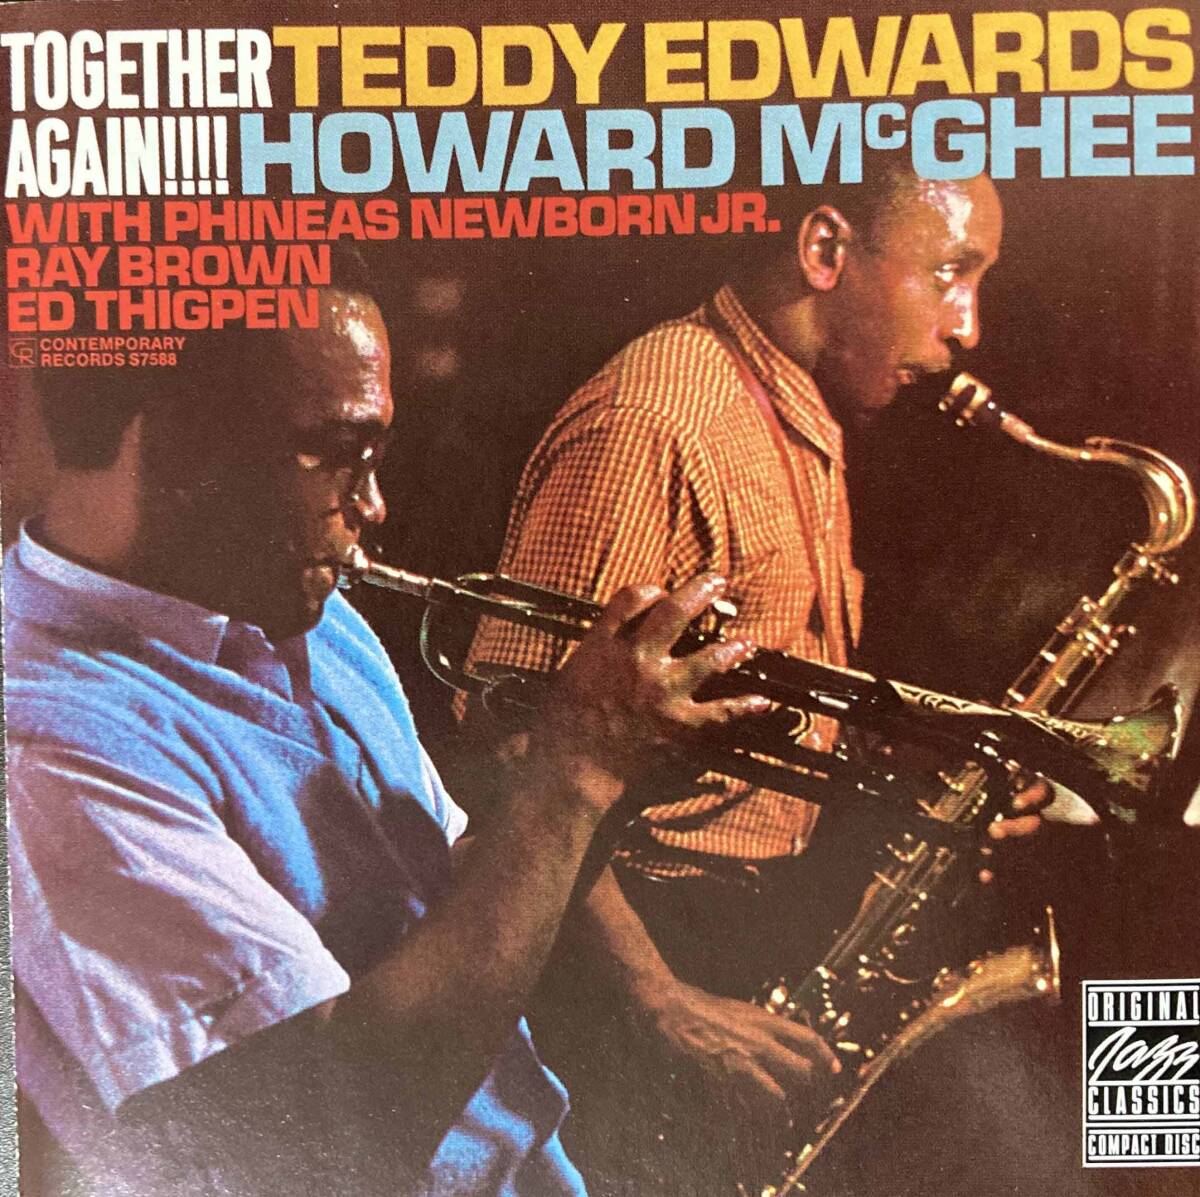 Teddy Edwards & Howard McGhee / Together Again 中古CD 輸入盤 の画像1